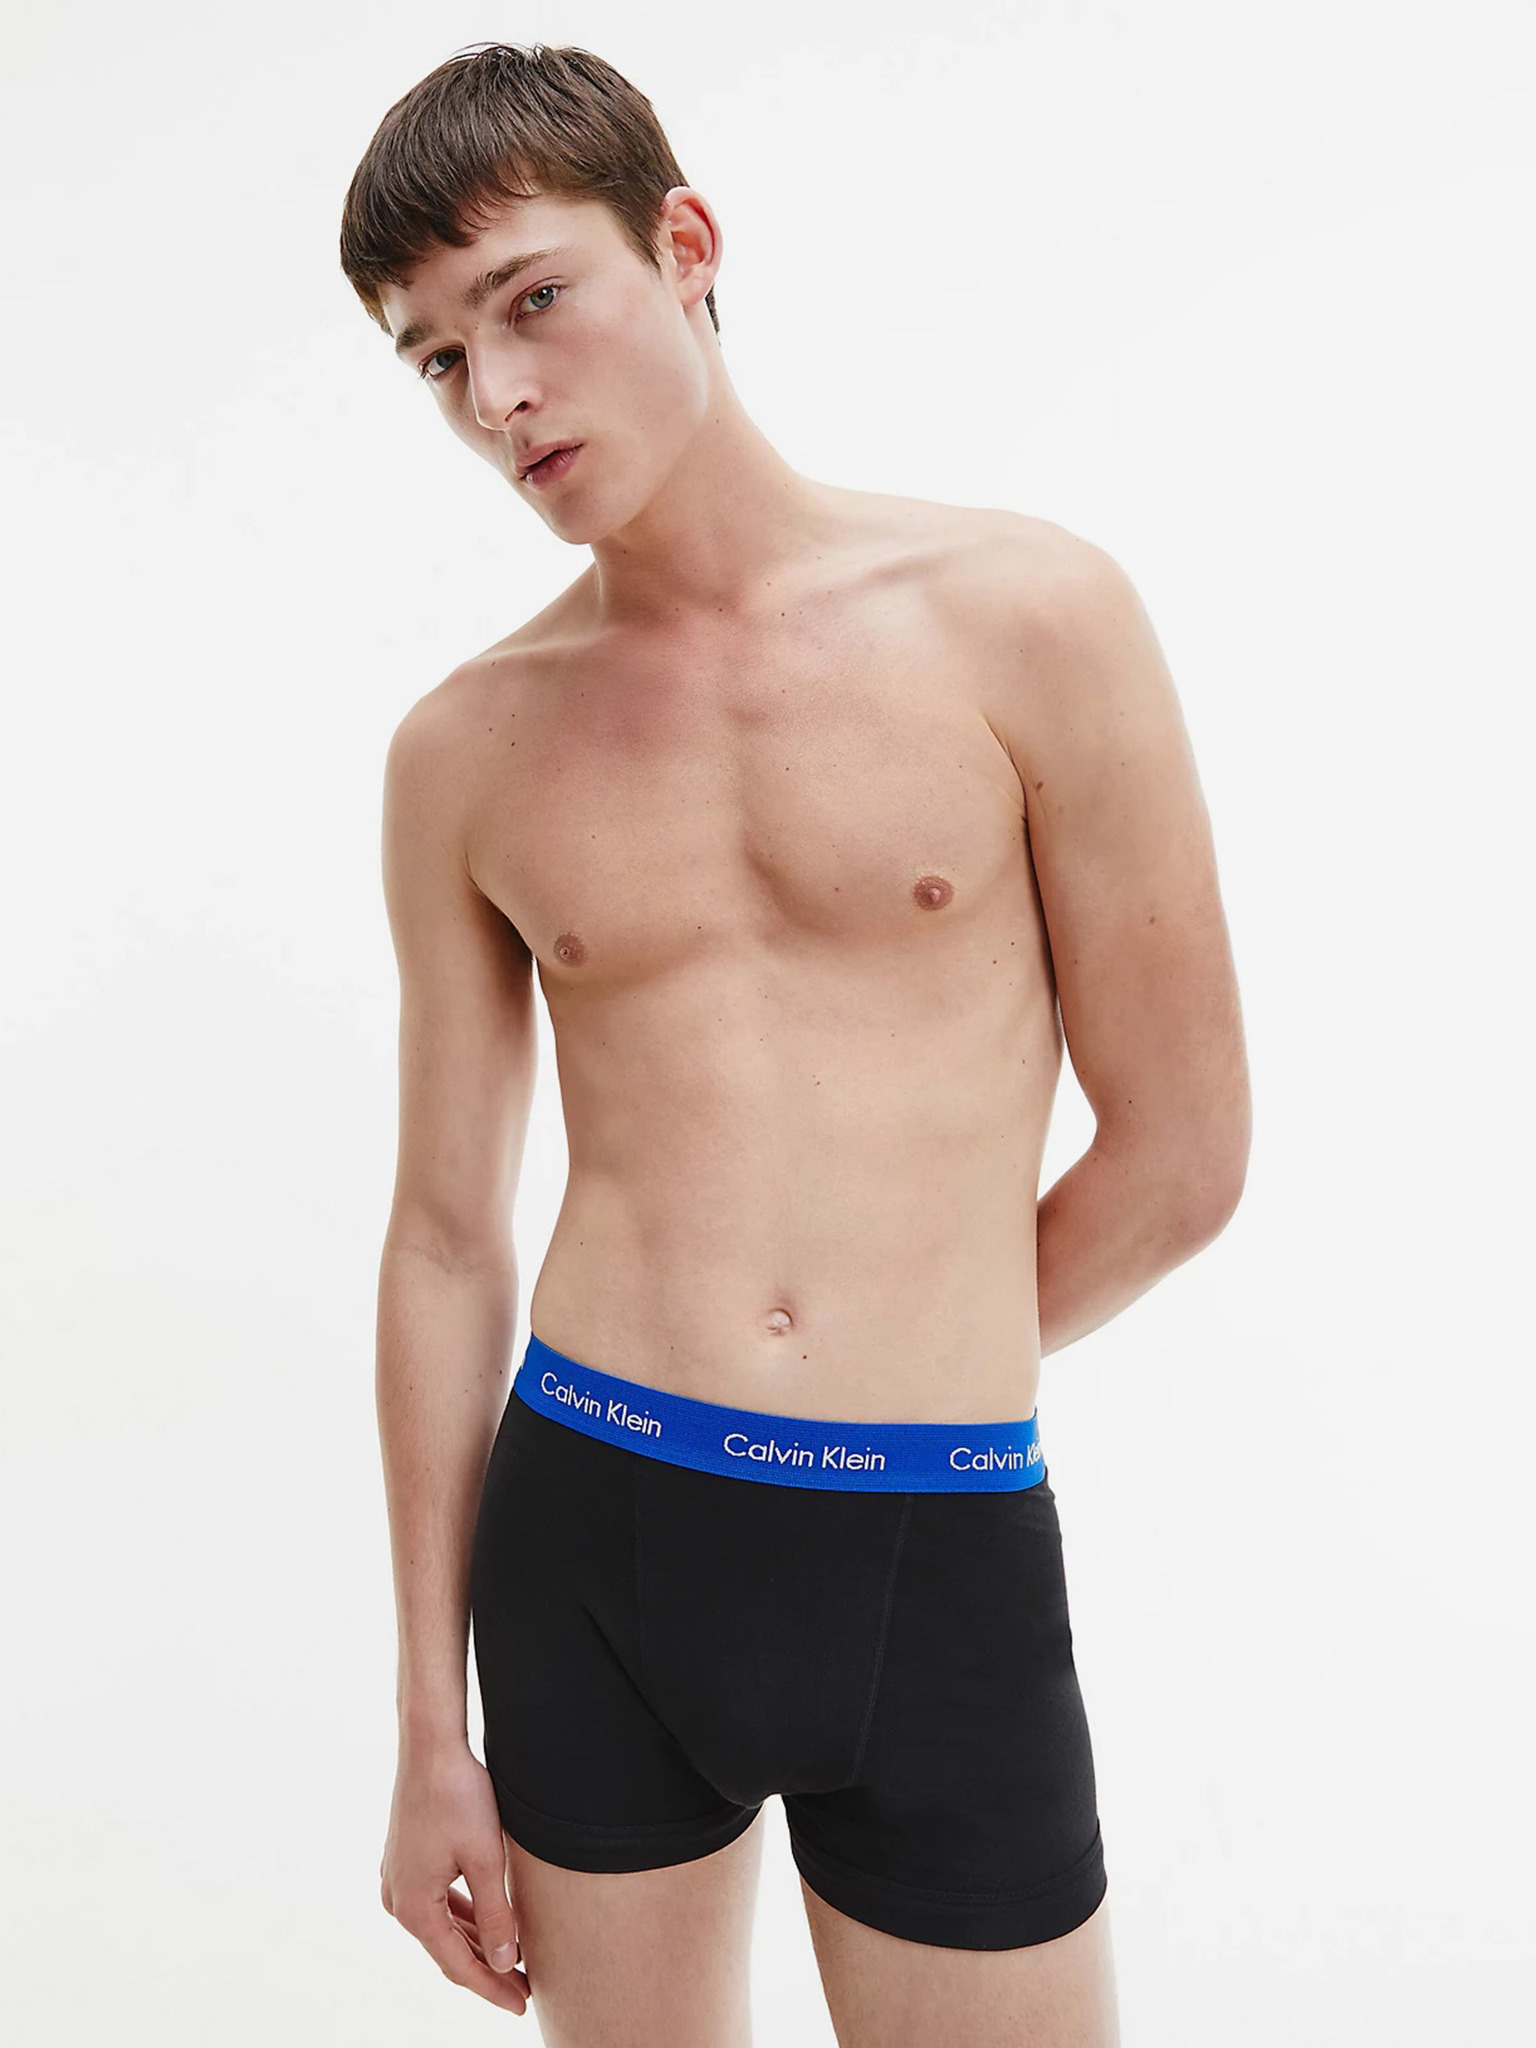 Calvin Klein Mens Underwear Cotton 3pcs box set - Basic Wear